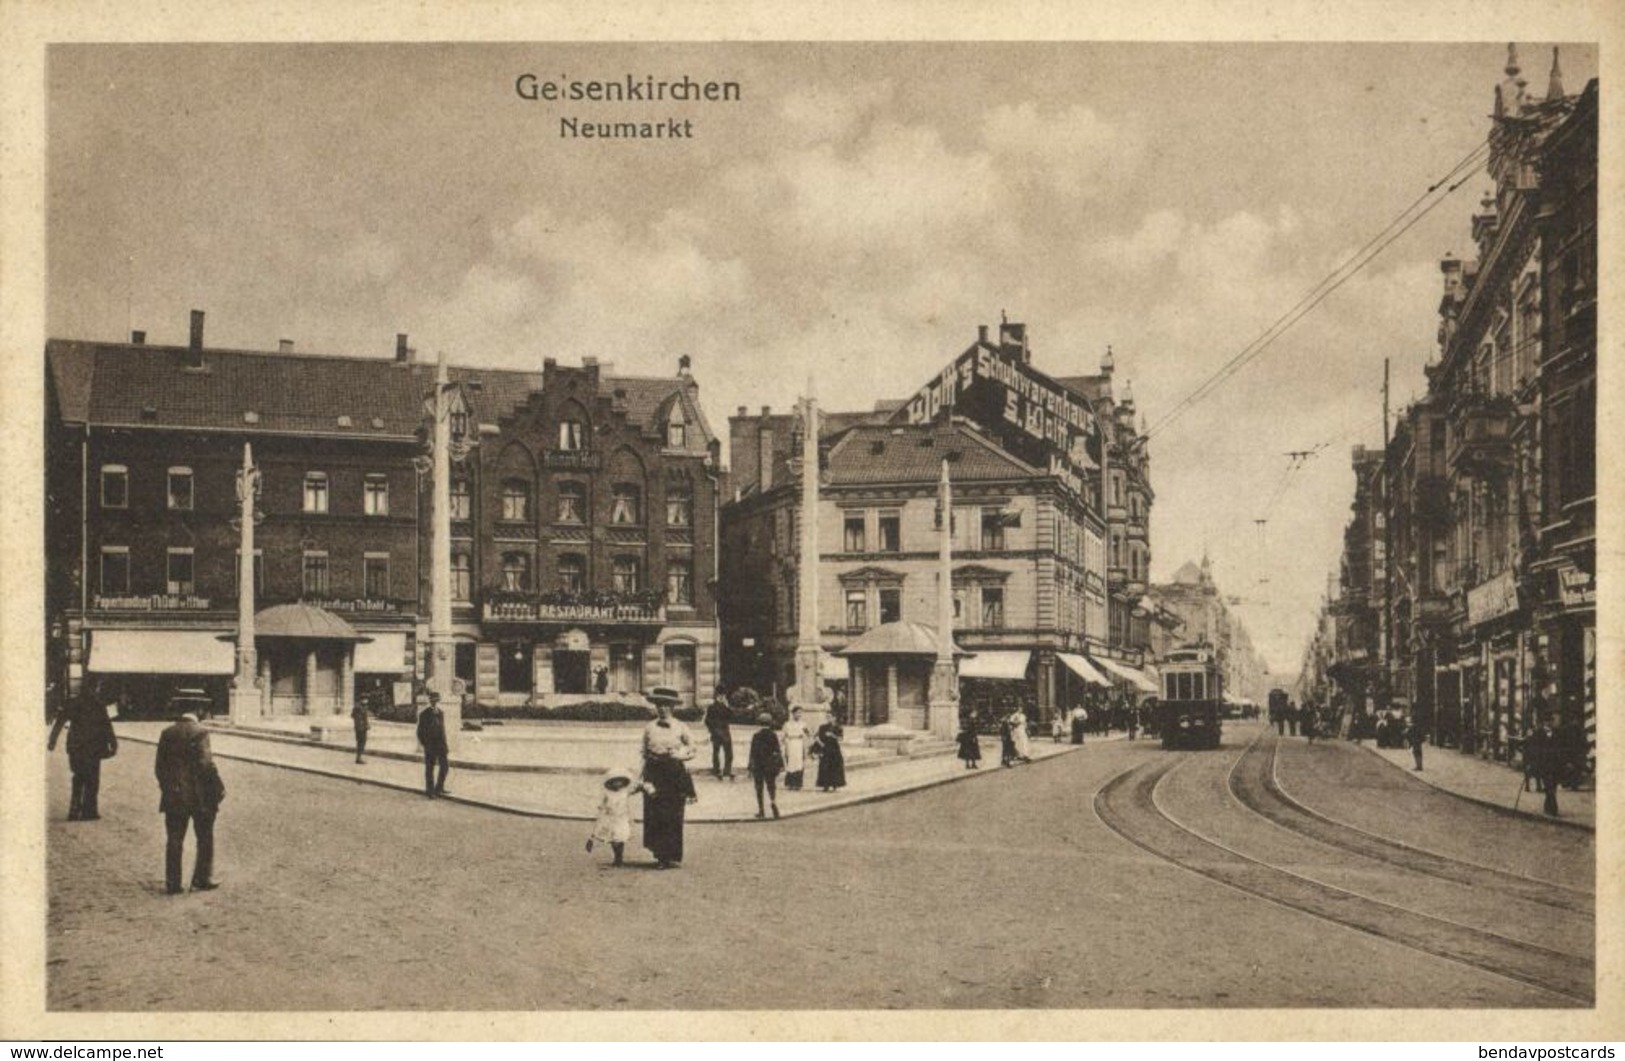 GELSENKIRCHEN, Neumarkt, Strassenbahn (1920s) AK - Gelsenkirchen